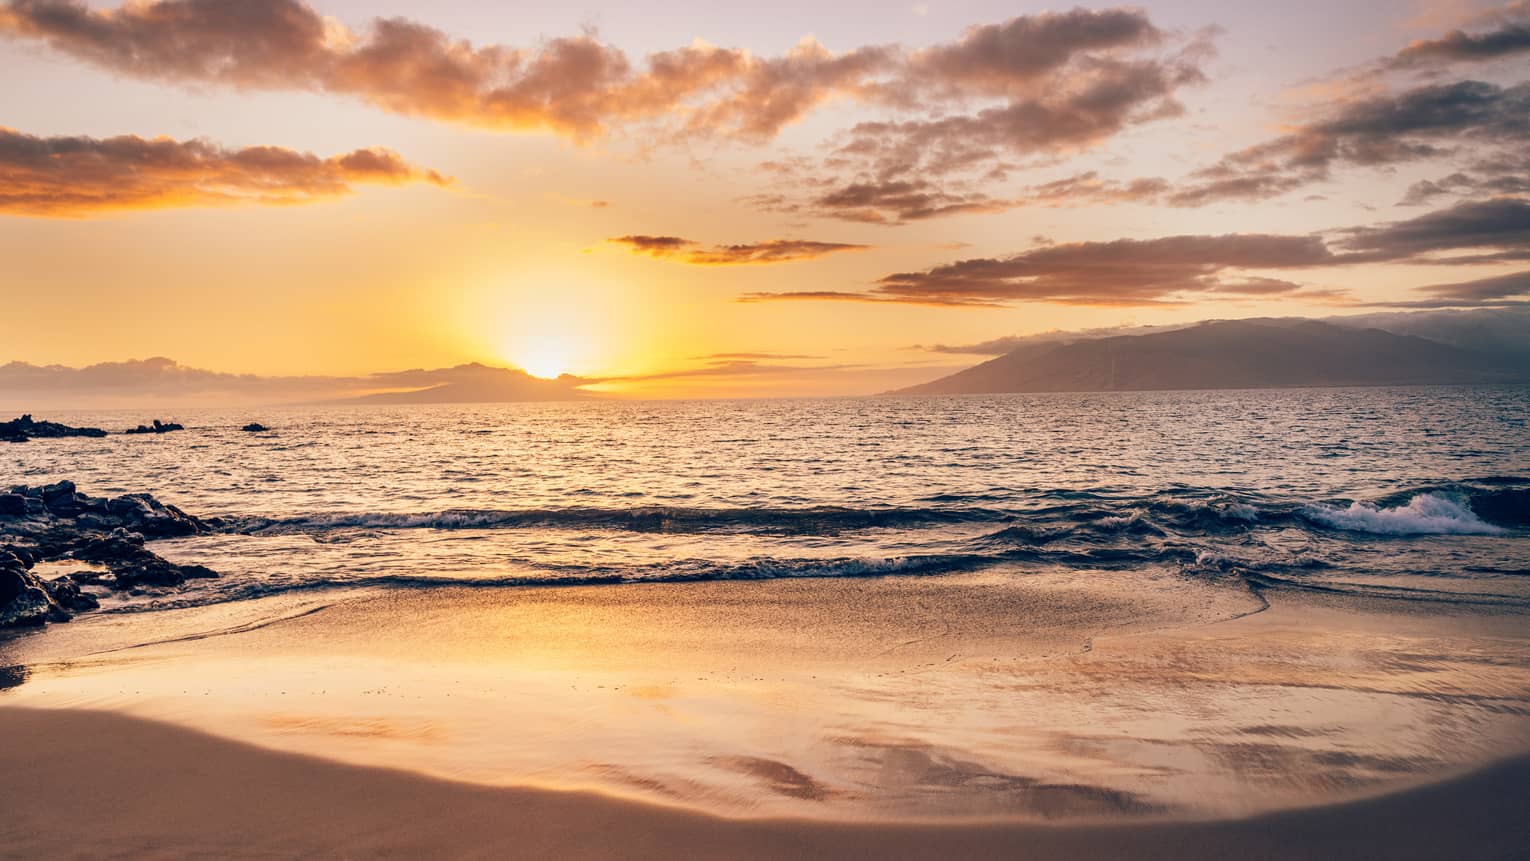 A sunrise on a beach.